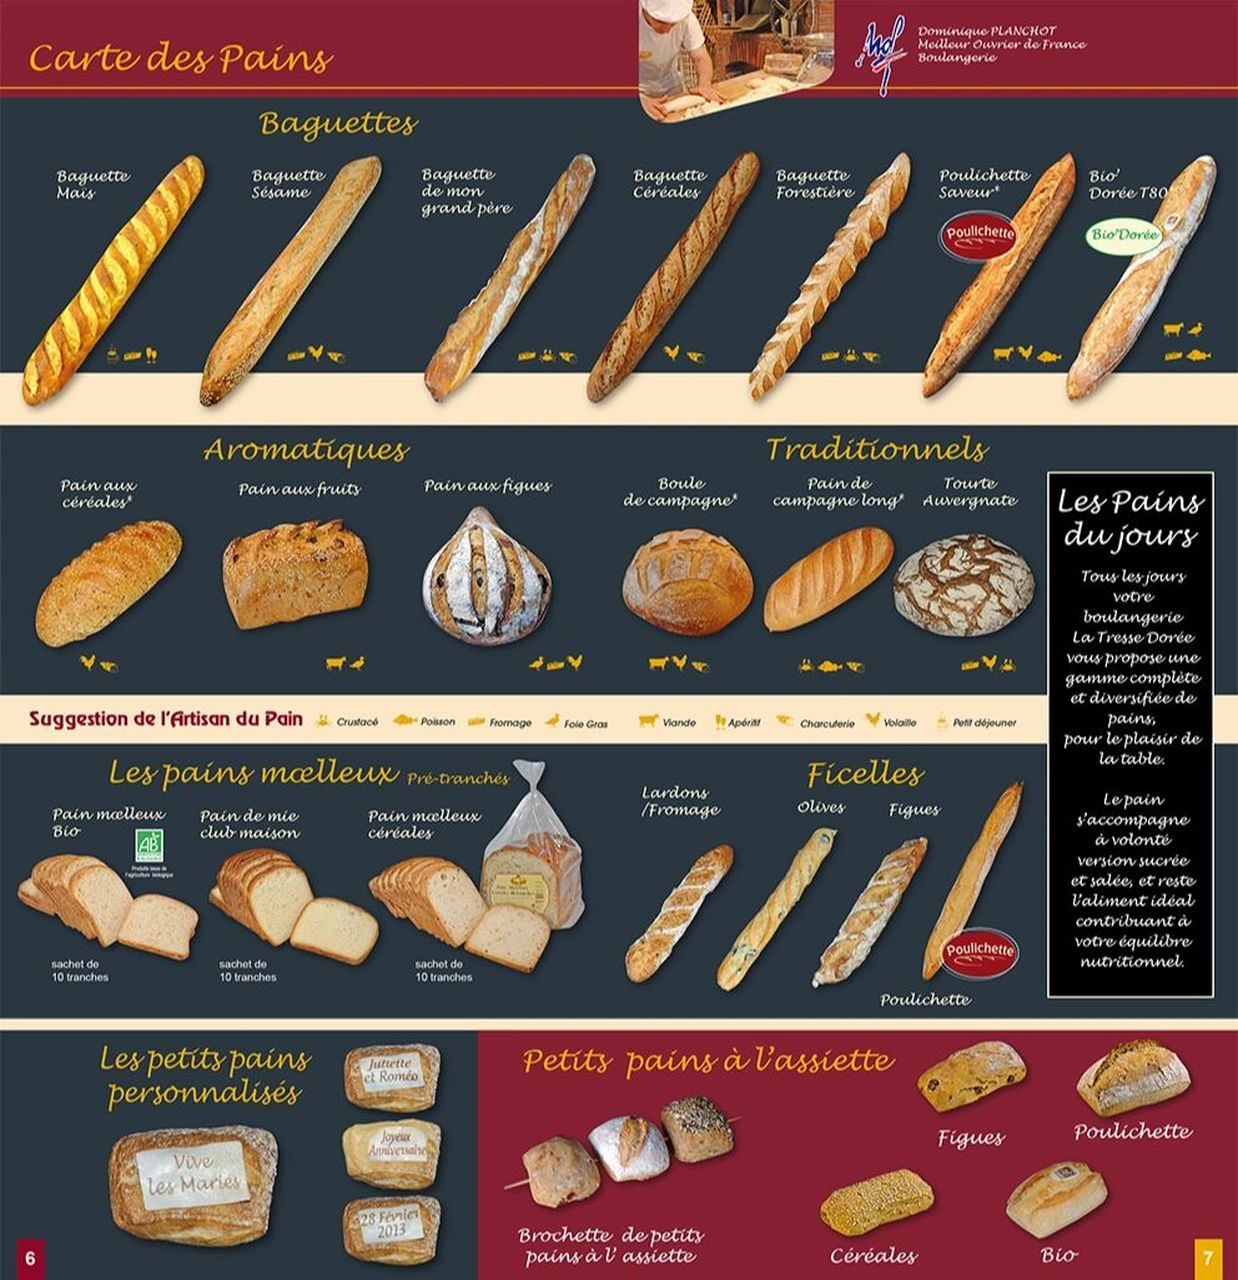 法国面包种类图片